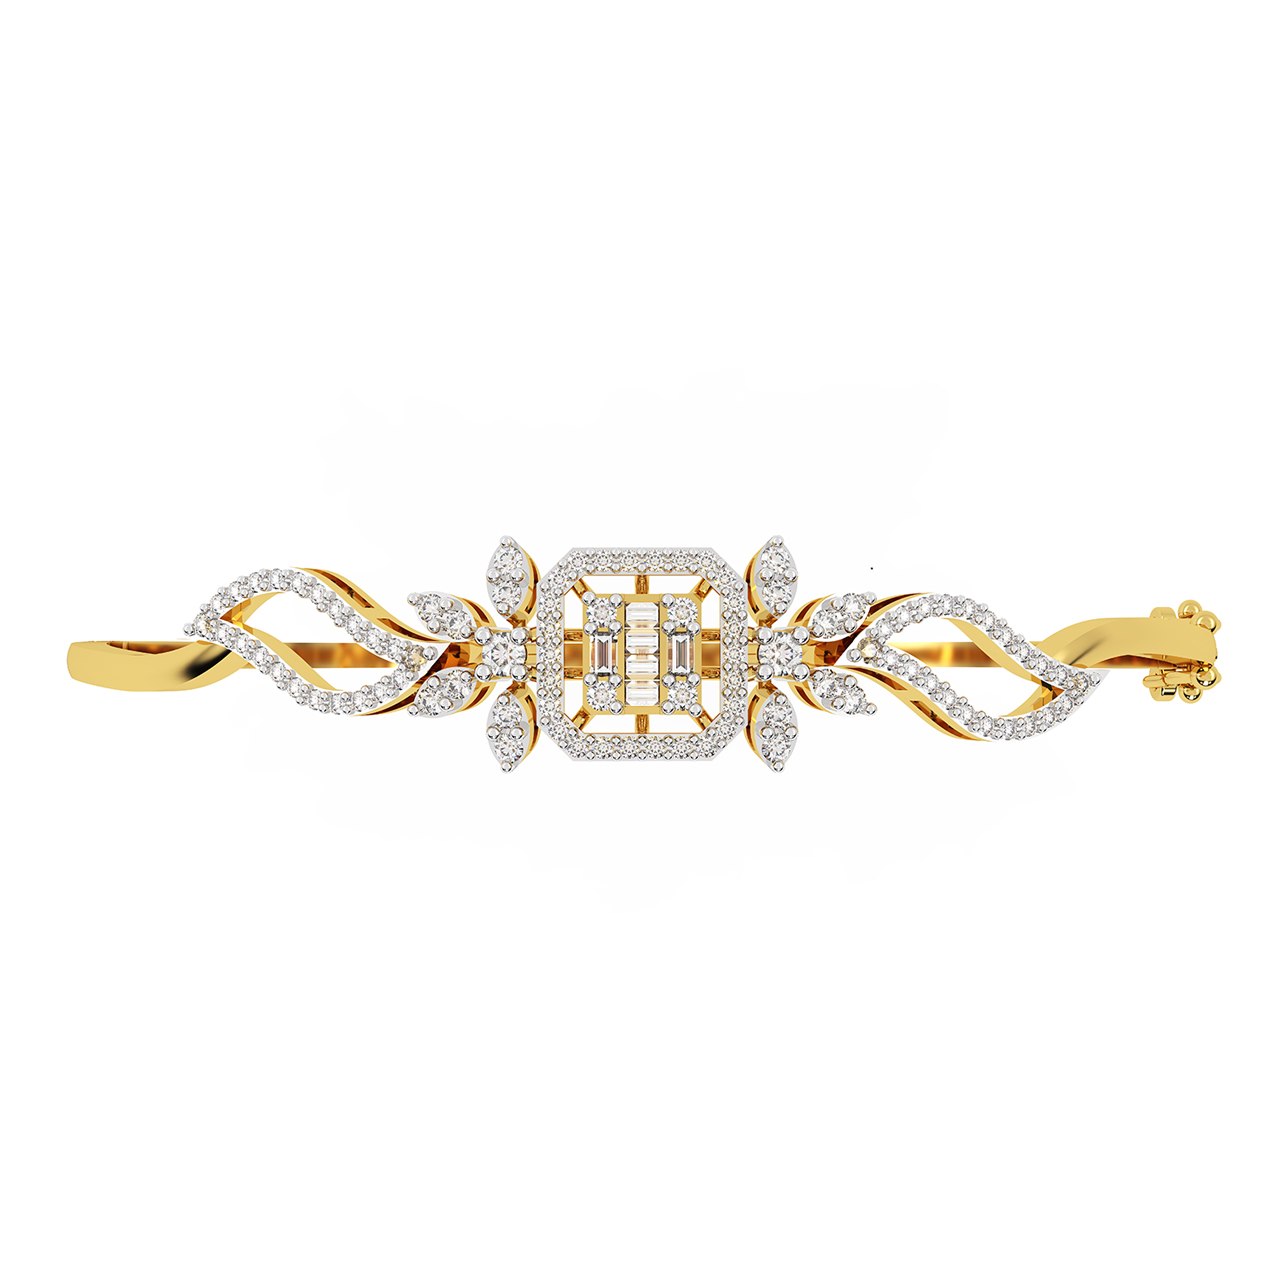 Diamond Bracelet Design In Gold